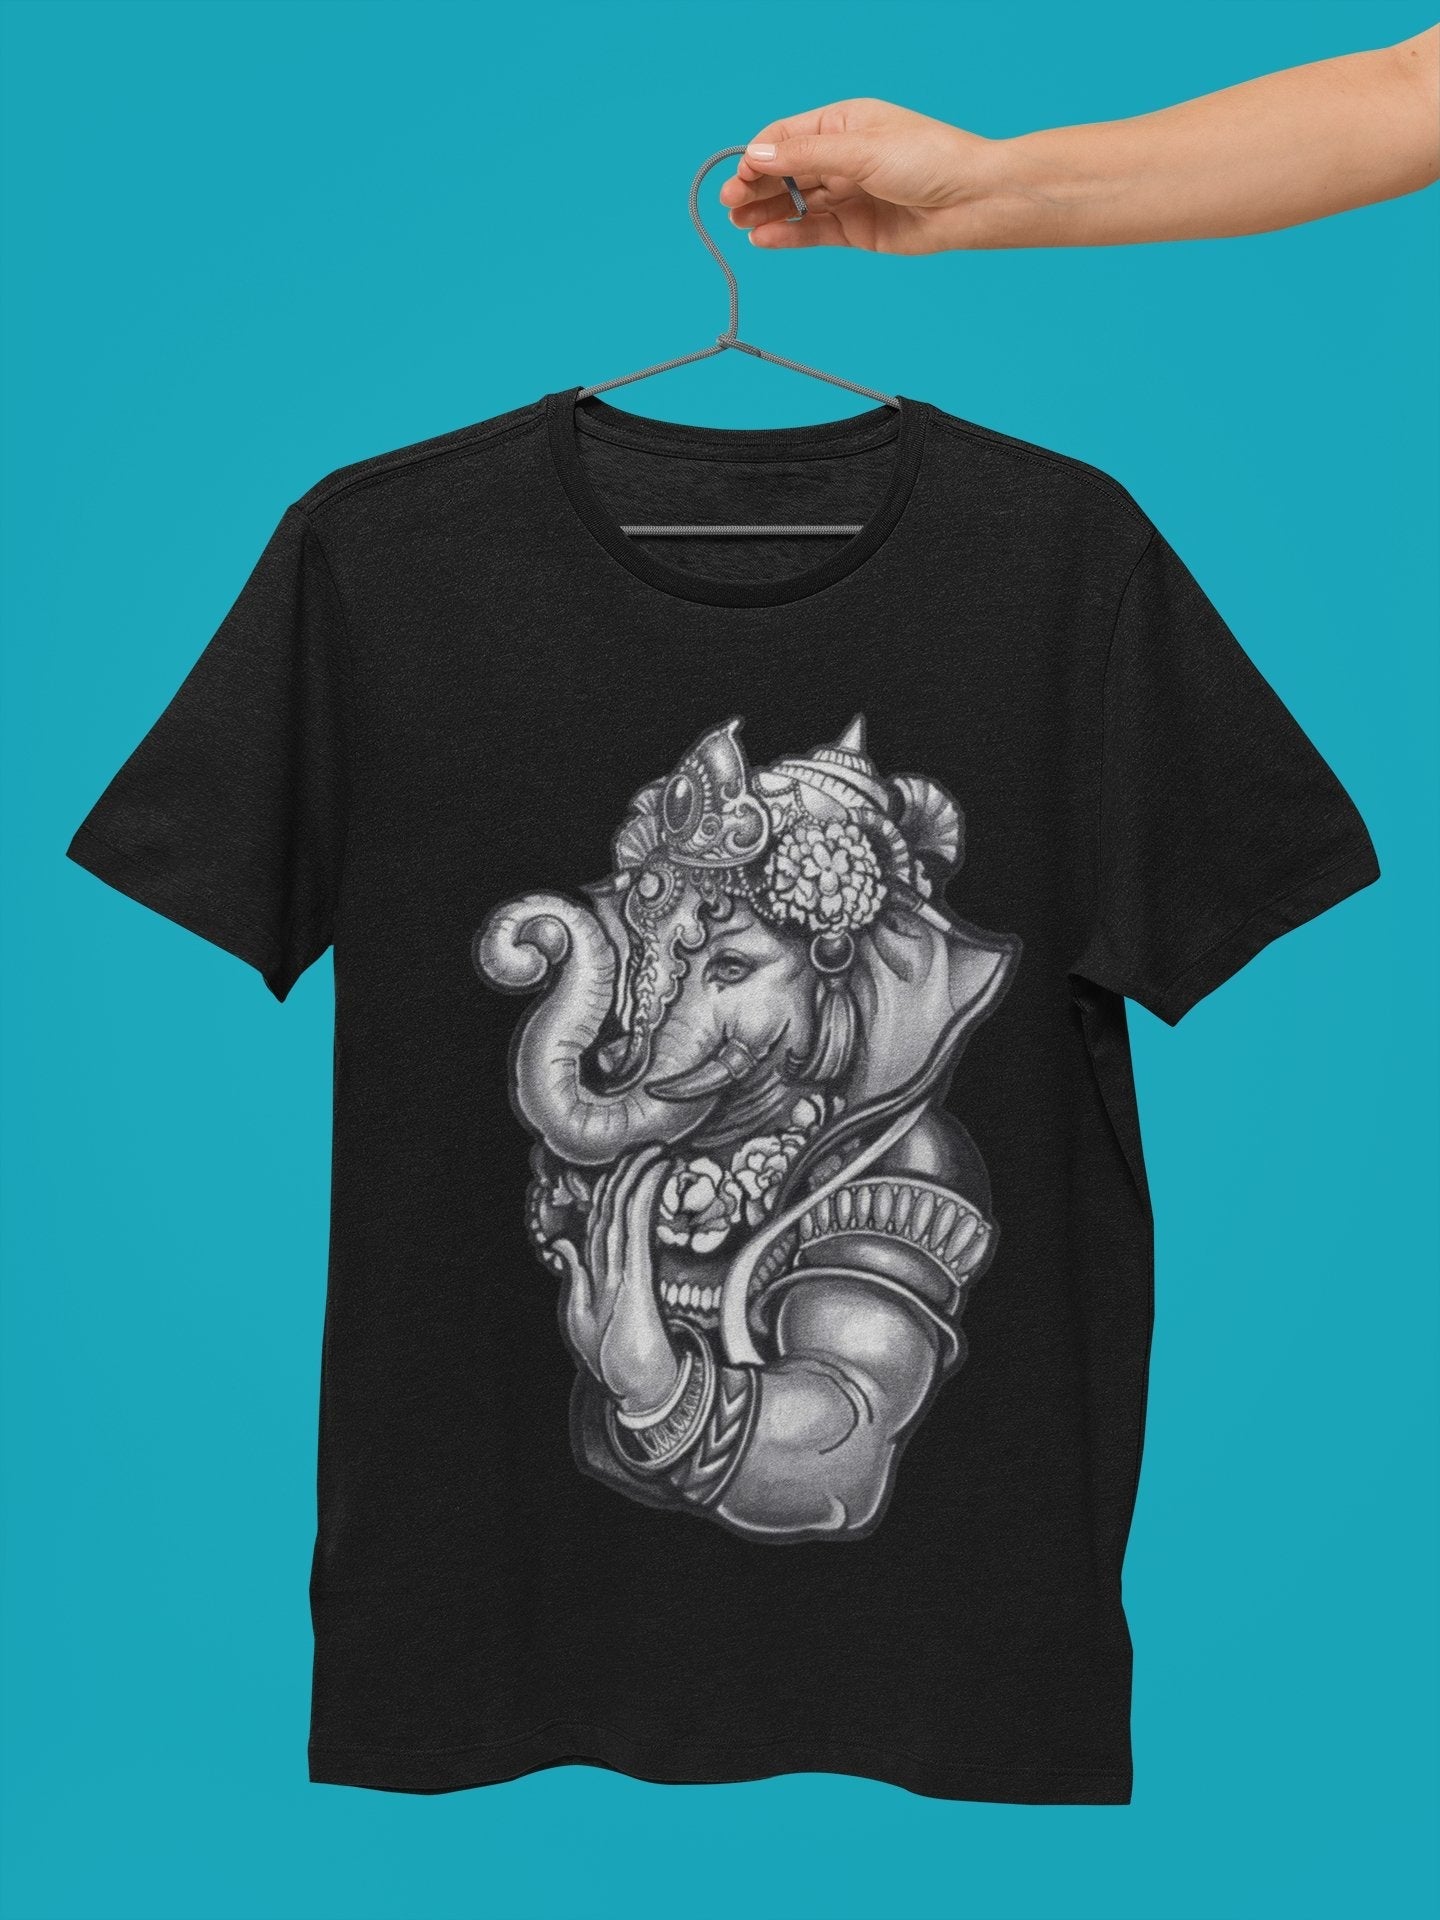 Super Lord Ganesh Mens Tshirt - Insane Tees